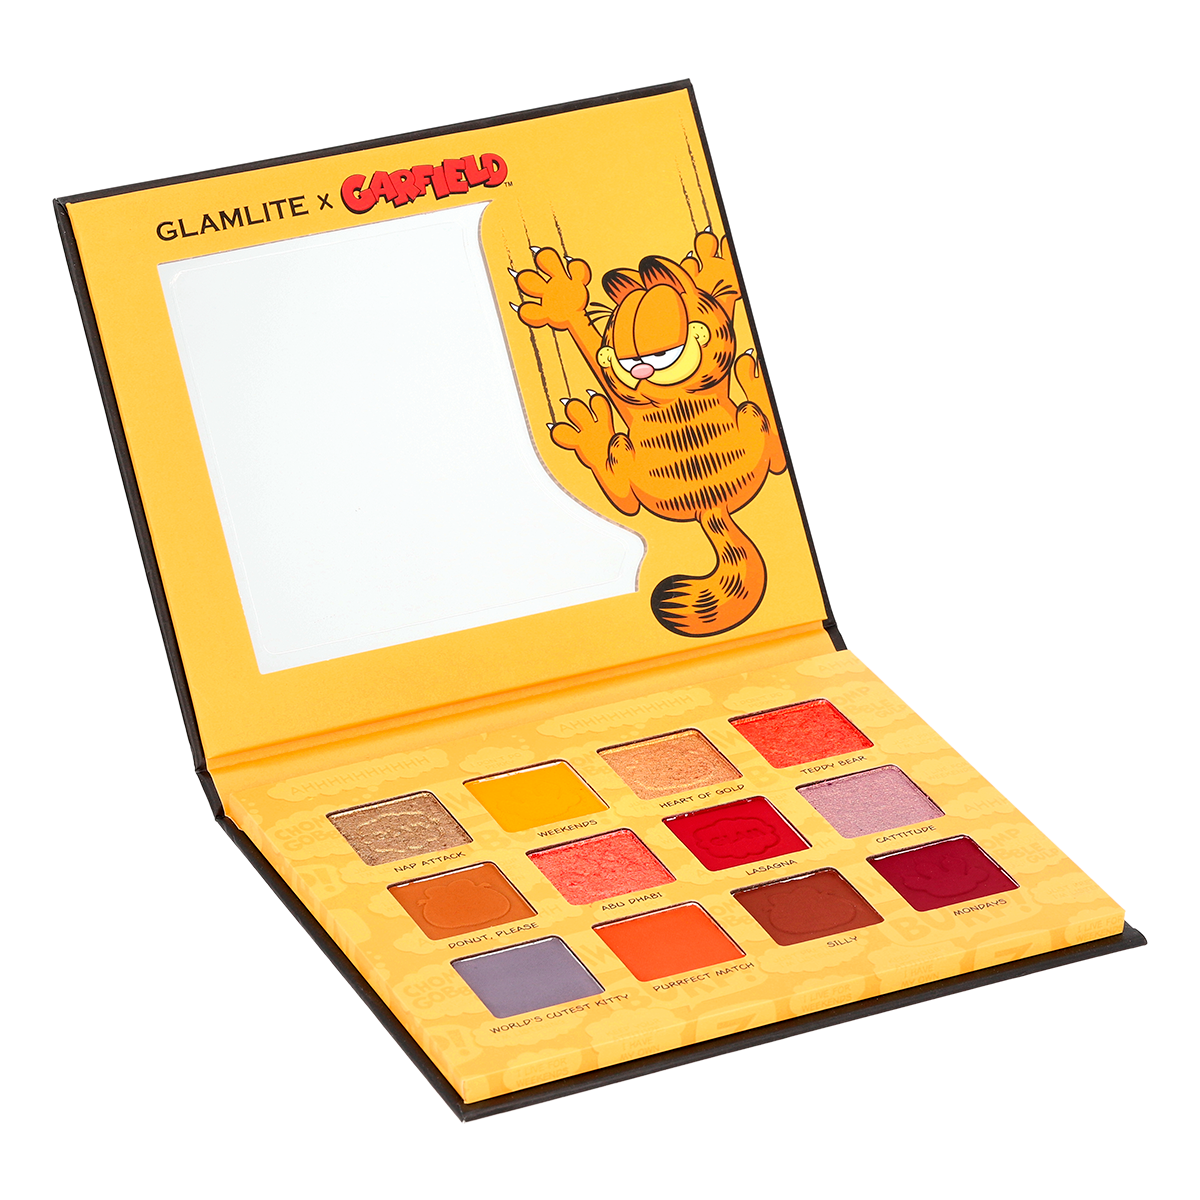 Garfield x Glamlite 12 Shadow Palette